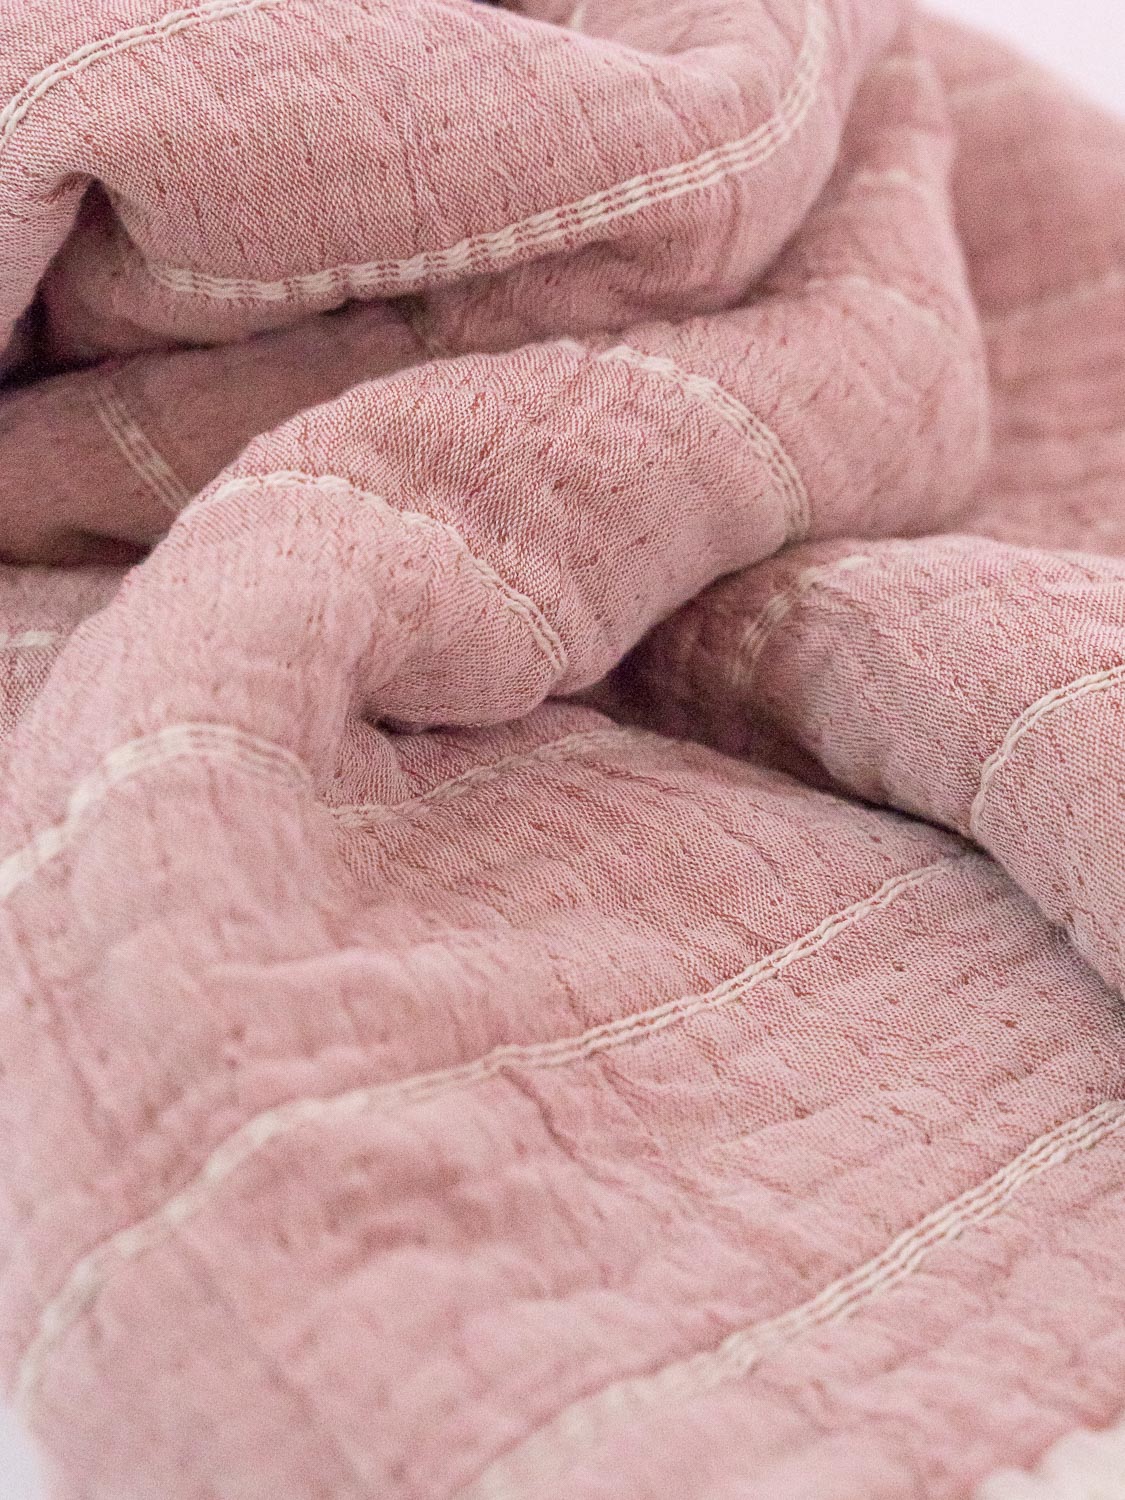 pink horizontal striped organic blanket close up